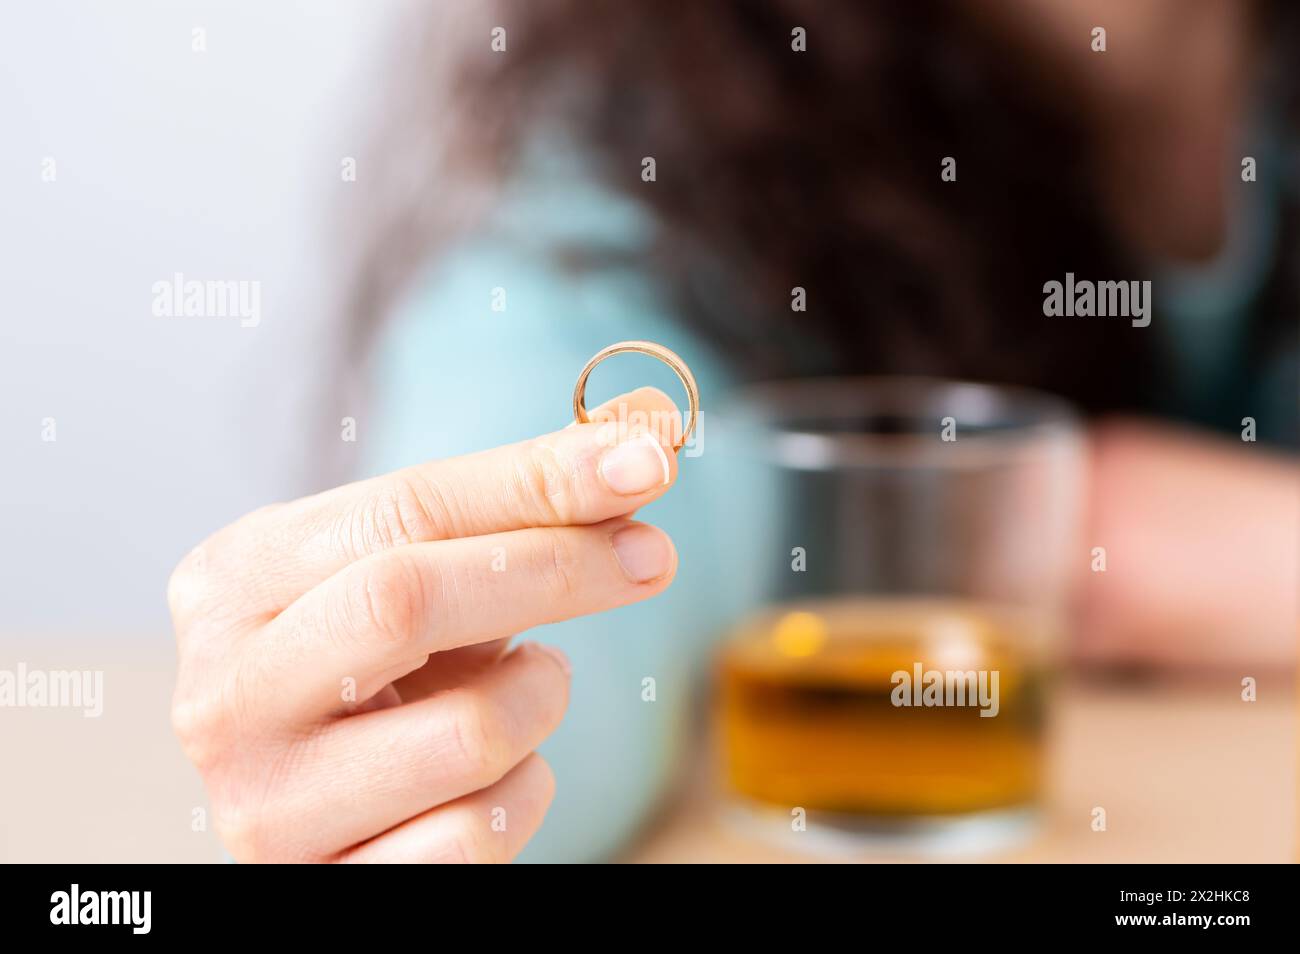 Nahaufnahme einer einzigen traurige Ehefrau nach Scheidung Klagen der Ehering in ein Haus innen halten Stockfoto